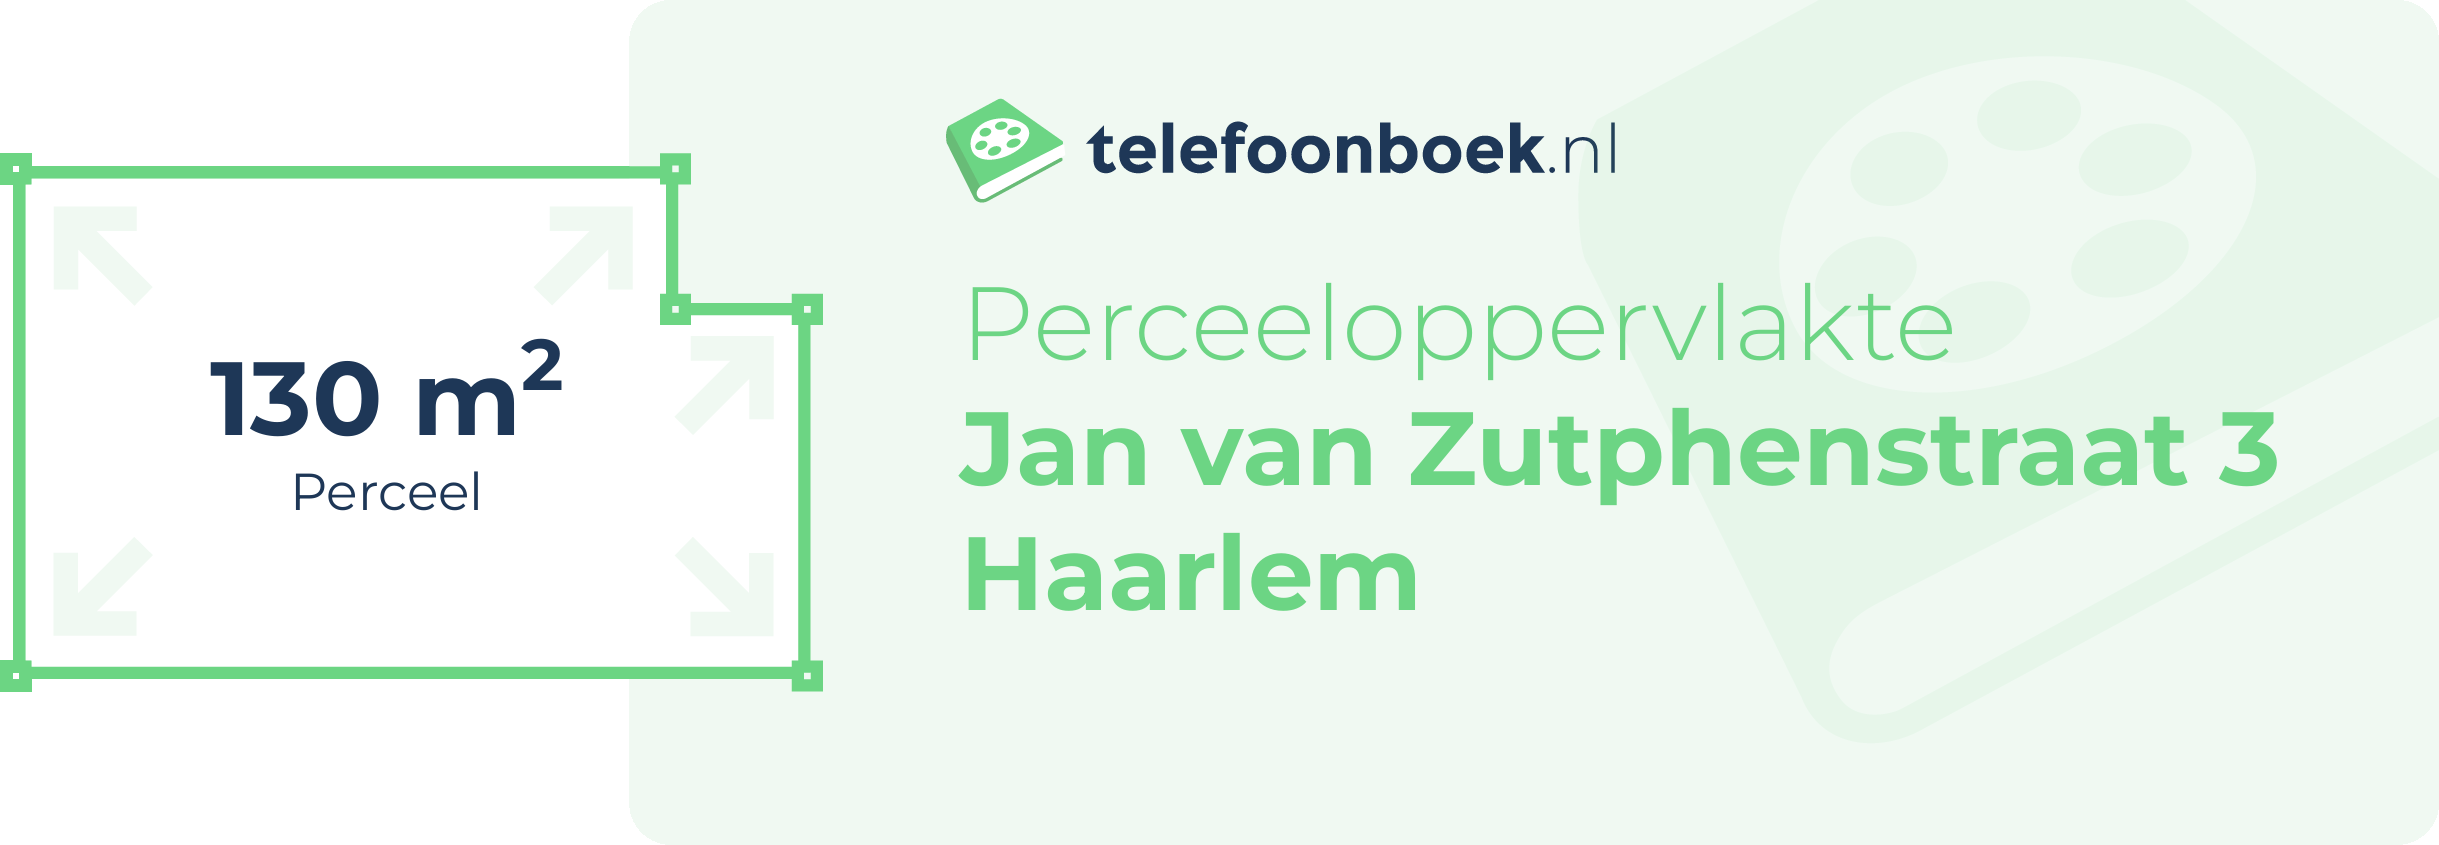 Perceeloppervlakte Jan Van Zutphenstraat 3 Haarlem